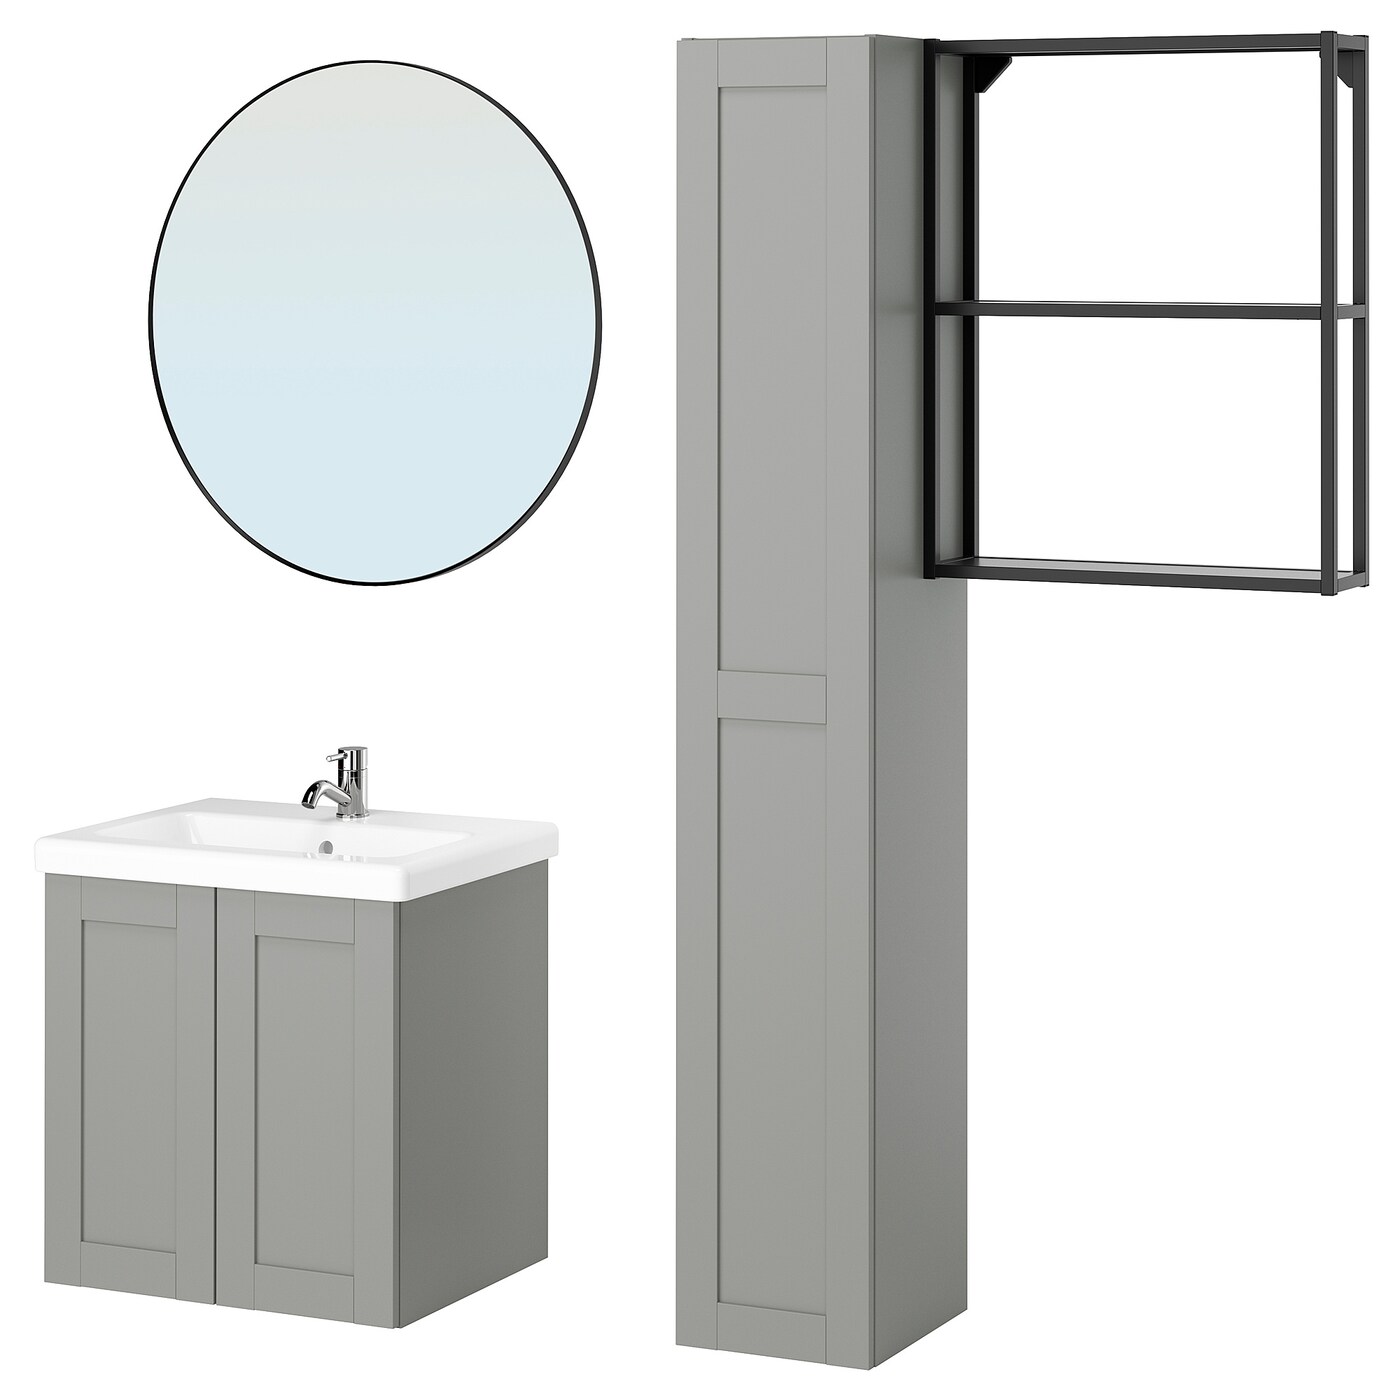 Комбинация для ванной - IKEA ENHET, 64х43х65 см, антрацит/серый, ЭНХЕТ ИКЕА